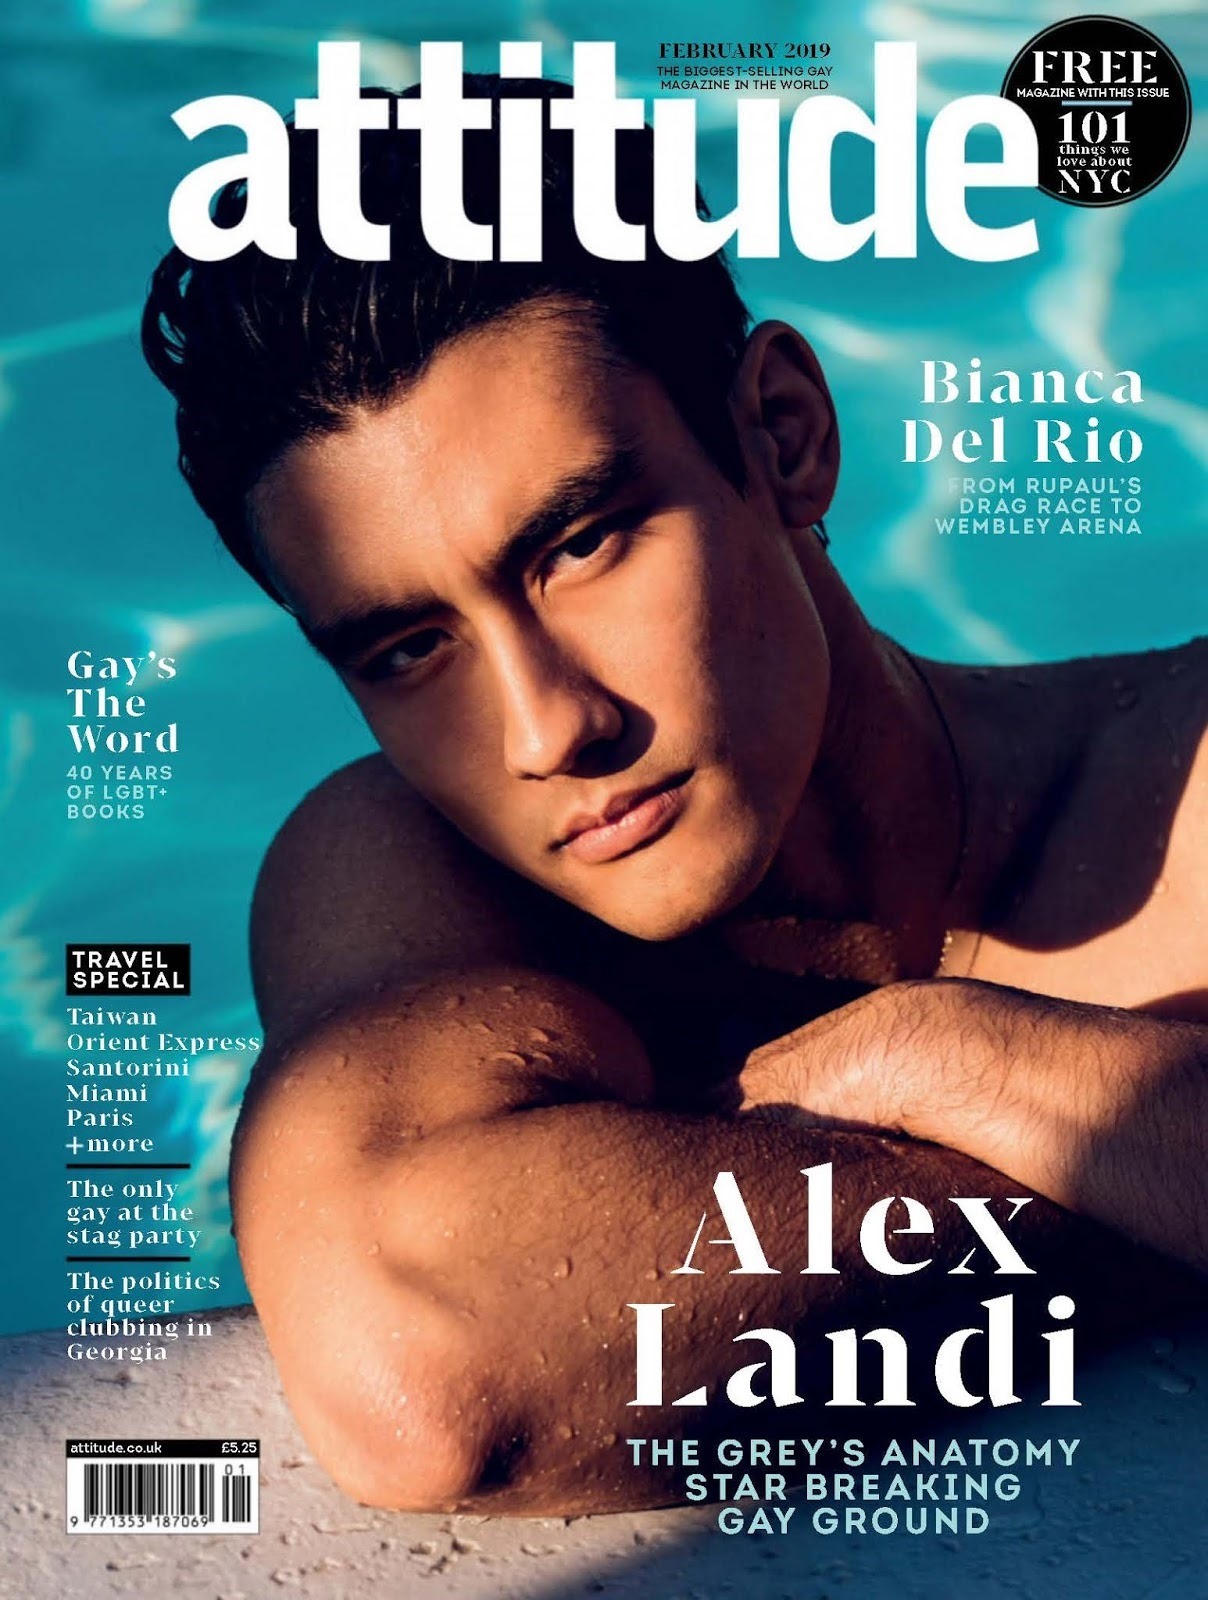 Attitude Magazine January 2019 Cover with Donatella Versace (Attitude  Magazine)